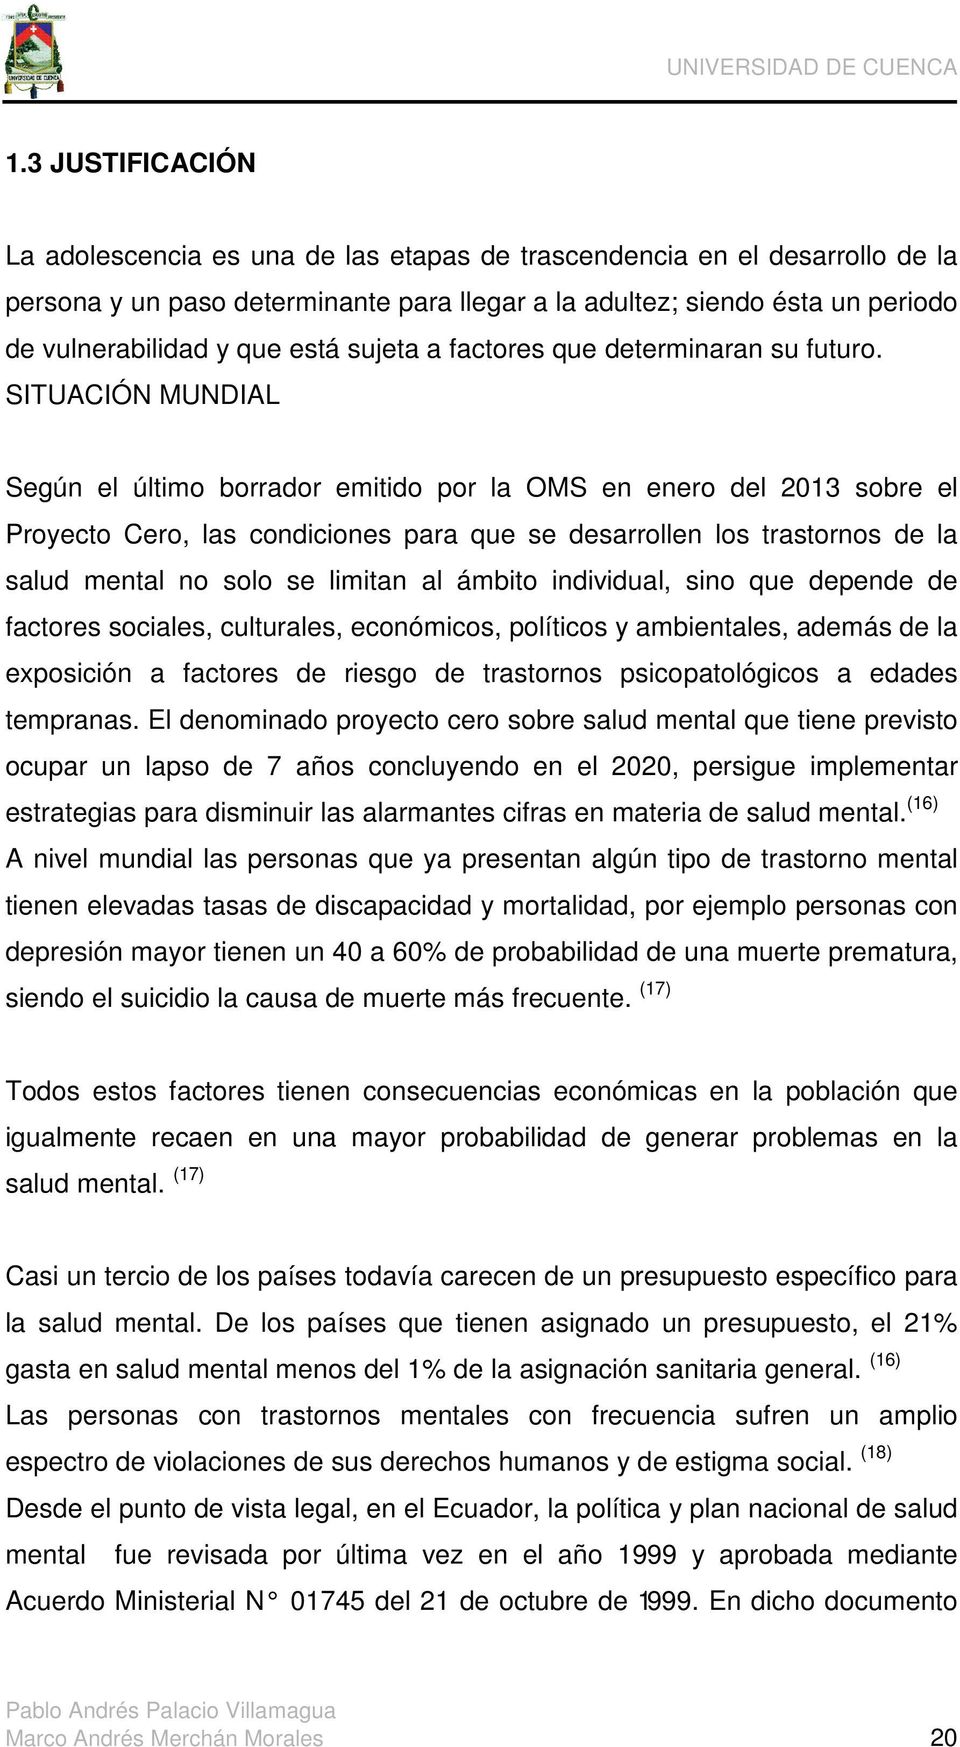 SITUACIÓN MUNDIAL Según el último borrador emitido por la OMS en enero del 2013 sobre el Proyecto Cero, las condiciones para que se desarrollen los trastornos de la salud mental no solo se limitan al